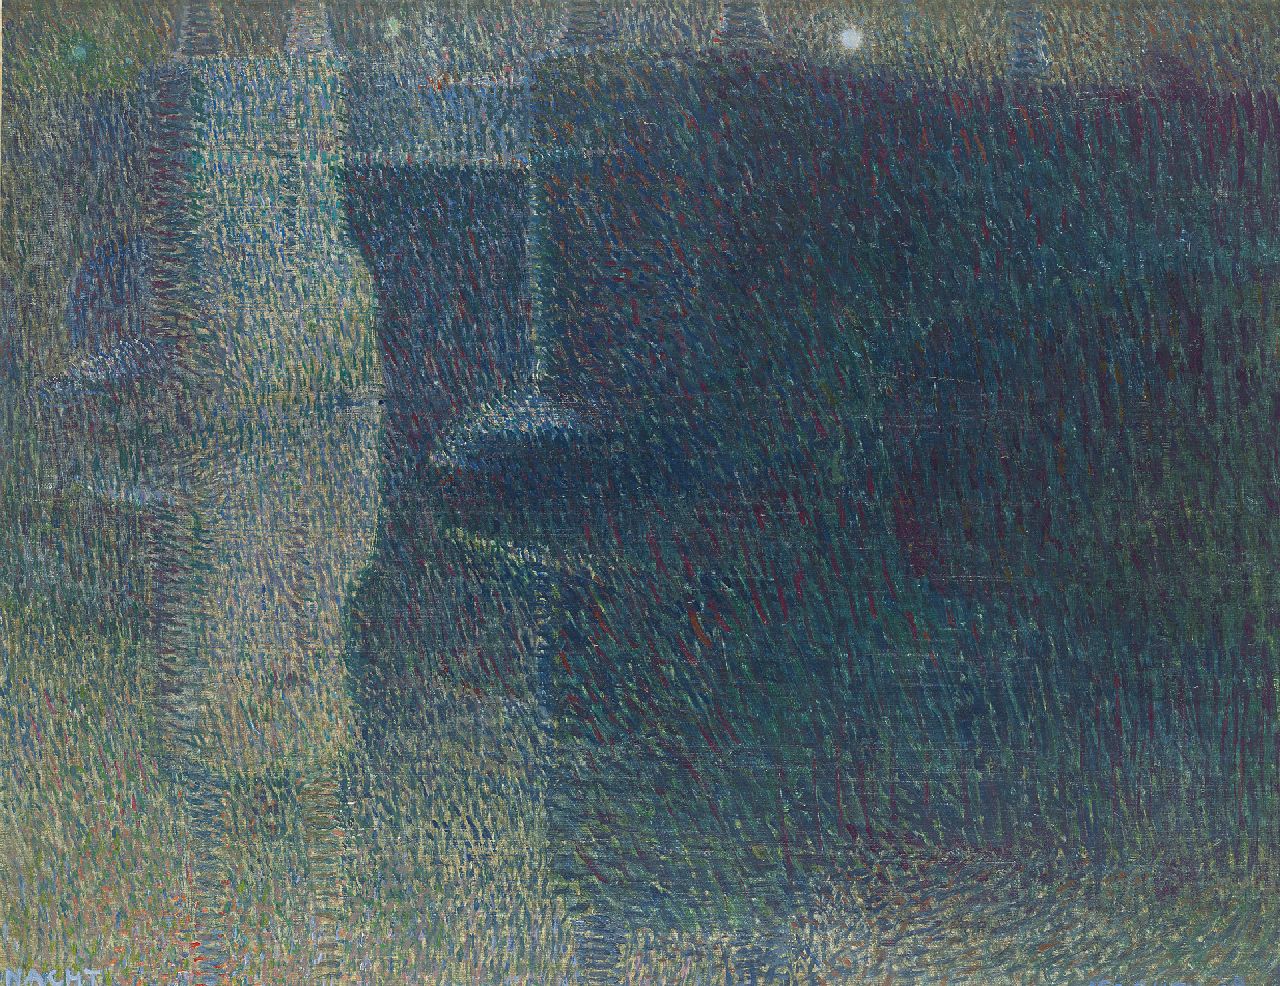 Gestel L.  | Leendert 'Leo' Gestel, Nacht (Amstelbrug over Amstel in Amsterdam), olieverf op doek 52,0 x 64,8 cm, gesigneerd rechtsonder en gedateerd '08